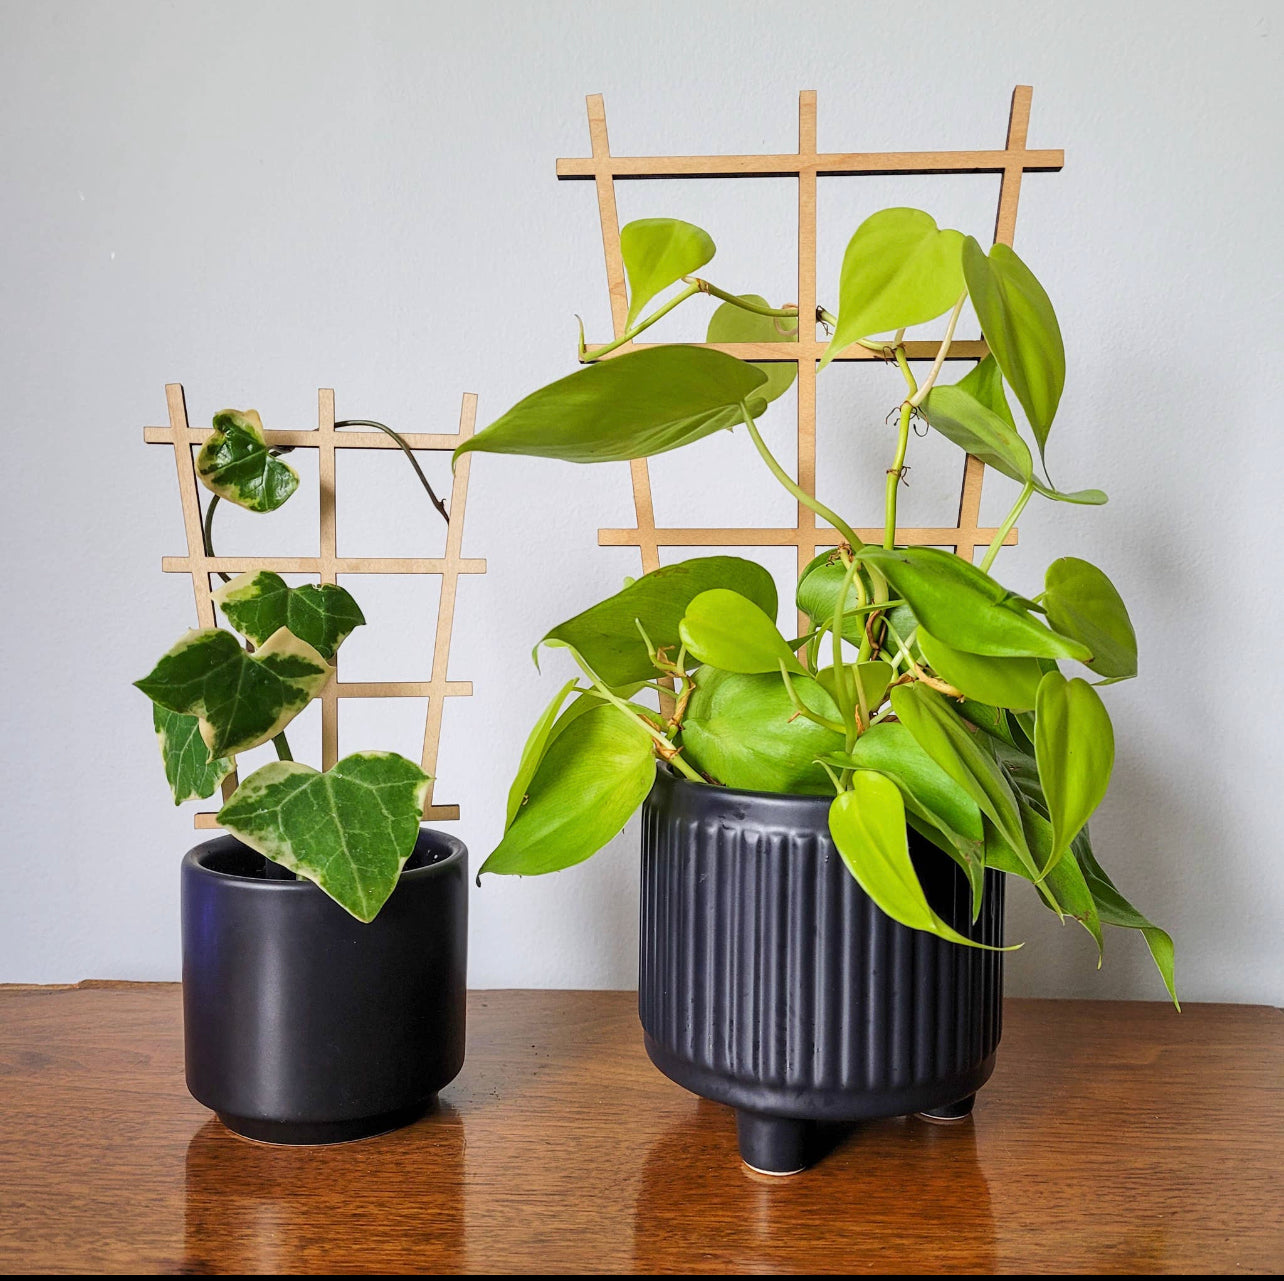 Leaf & Node - Ladder Indoor Wooden Plant Trellis (2 Sizes Available)